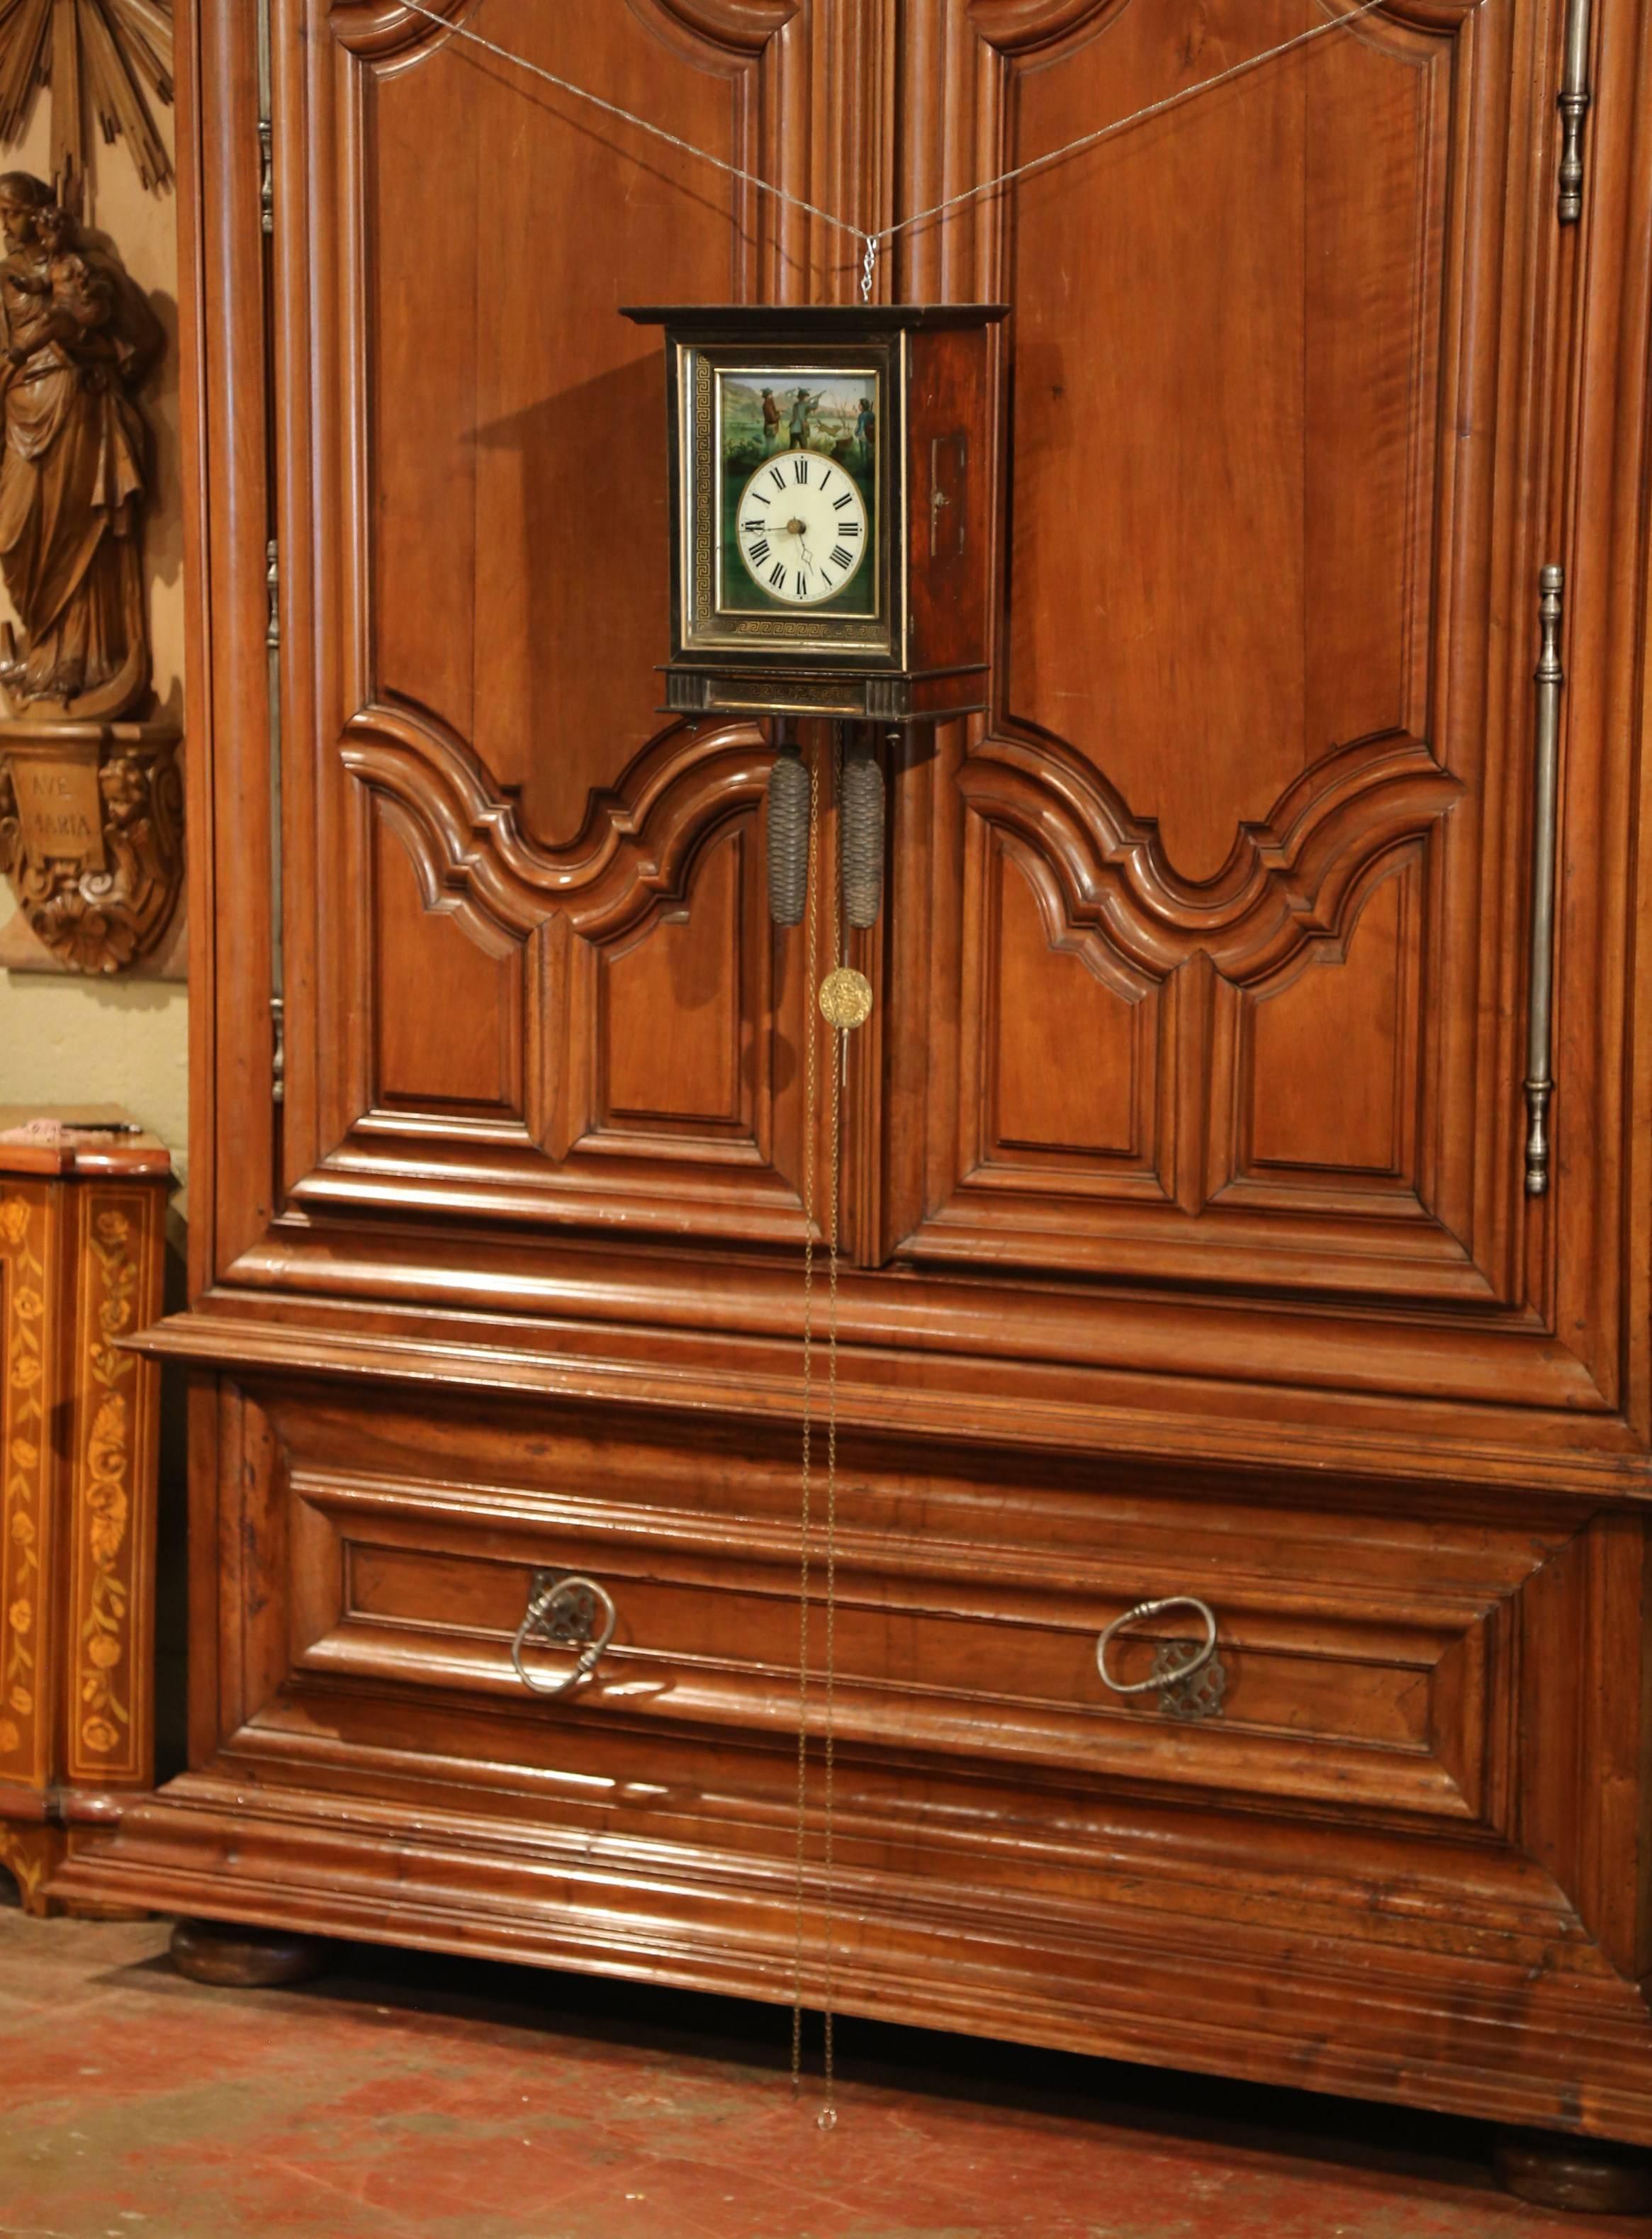 Cette élégante horloge ancienne a été fabriquée en France, vers 1870. Le garde-temps mural noir et doré représente une scène de chasse aux oiseaux peinte à la main en haut, sous la porte vitrée d'origine. On y voit un père qui regarde ses fils